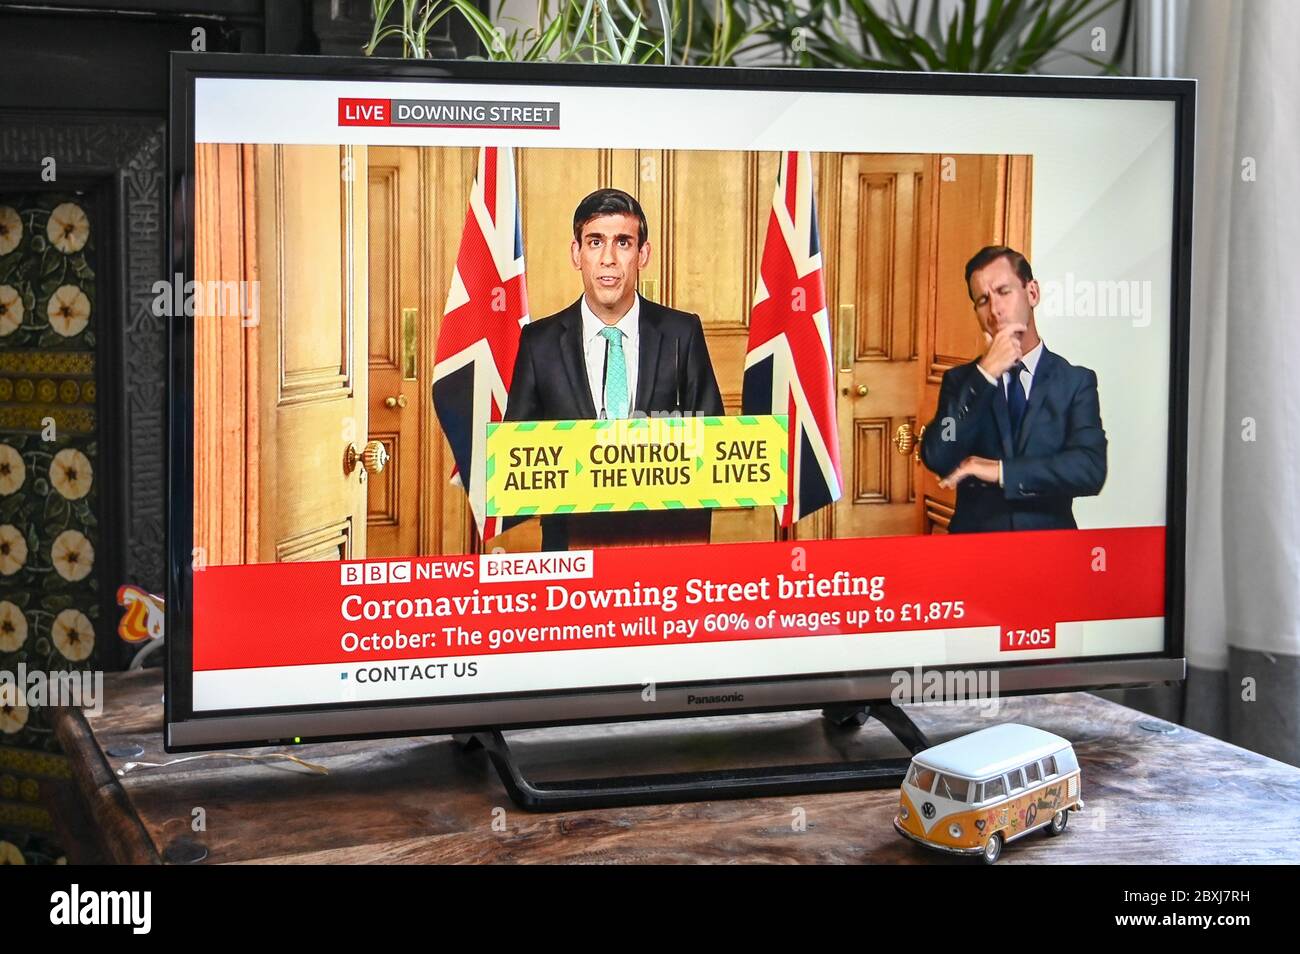 Le briefing quotidien sur les coronavirus de Downing Street avec Rishi Sunak, chancelier de l'Échiquier, et le message « alerte de jour, contrôle du virus ». Banque D'Images